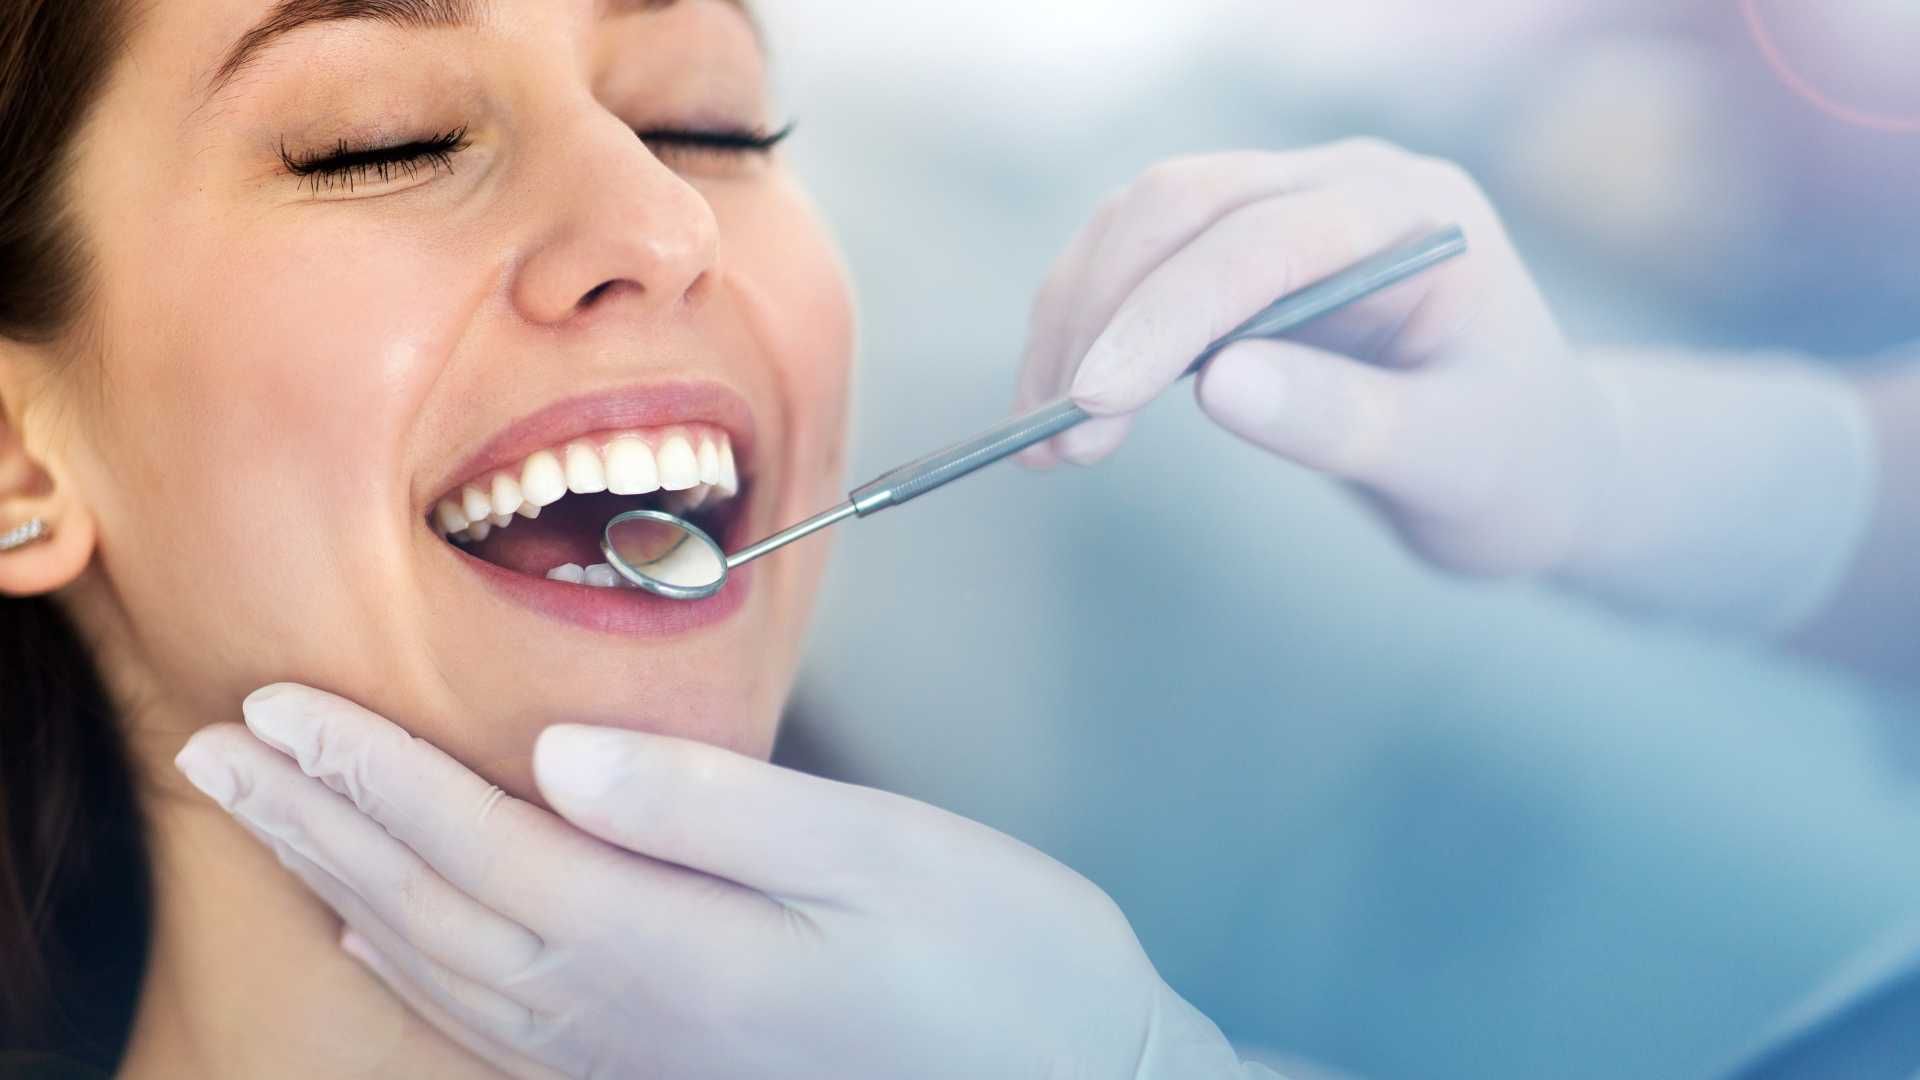 پرکردن دندان یک سطحی با آمالگام دکتر نوشین امین زاده گوهری در تهران 6